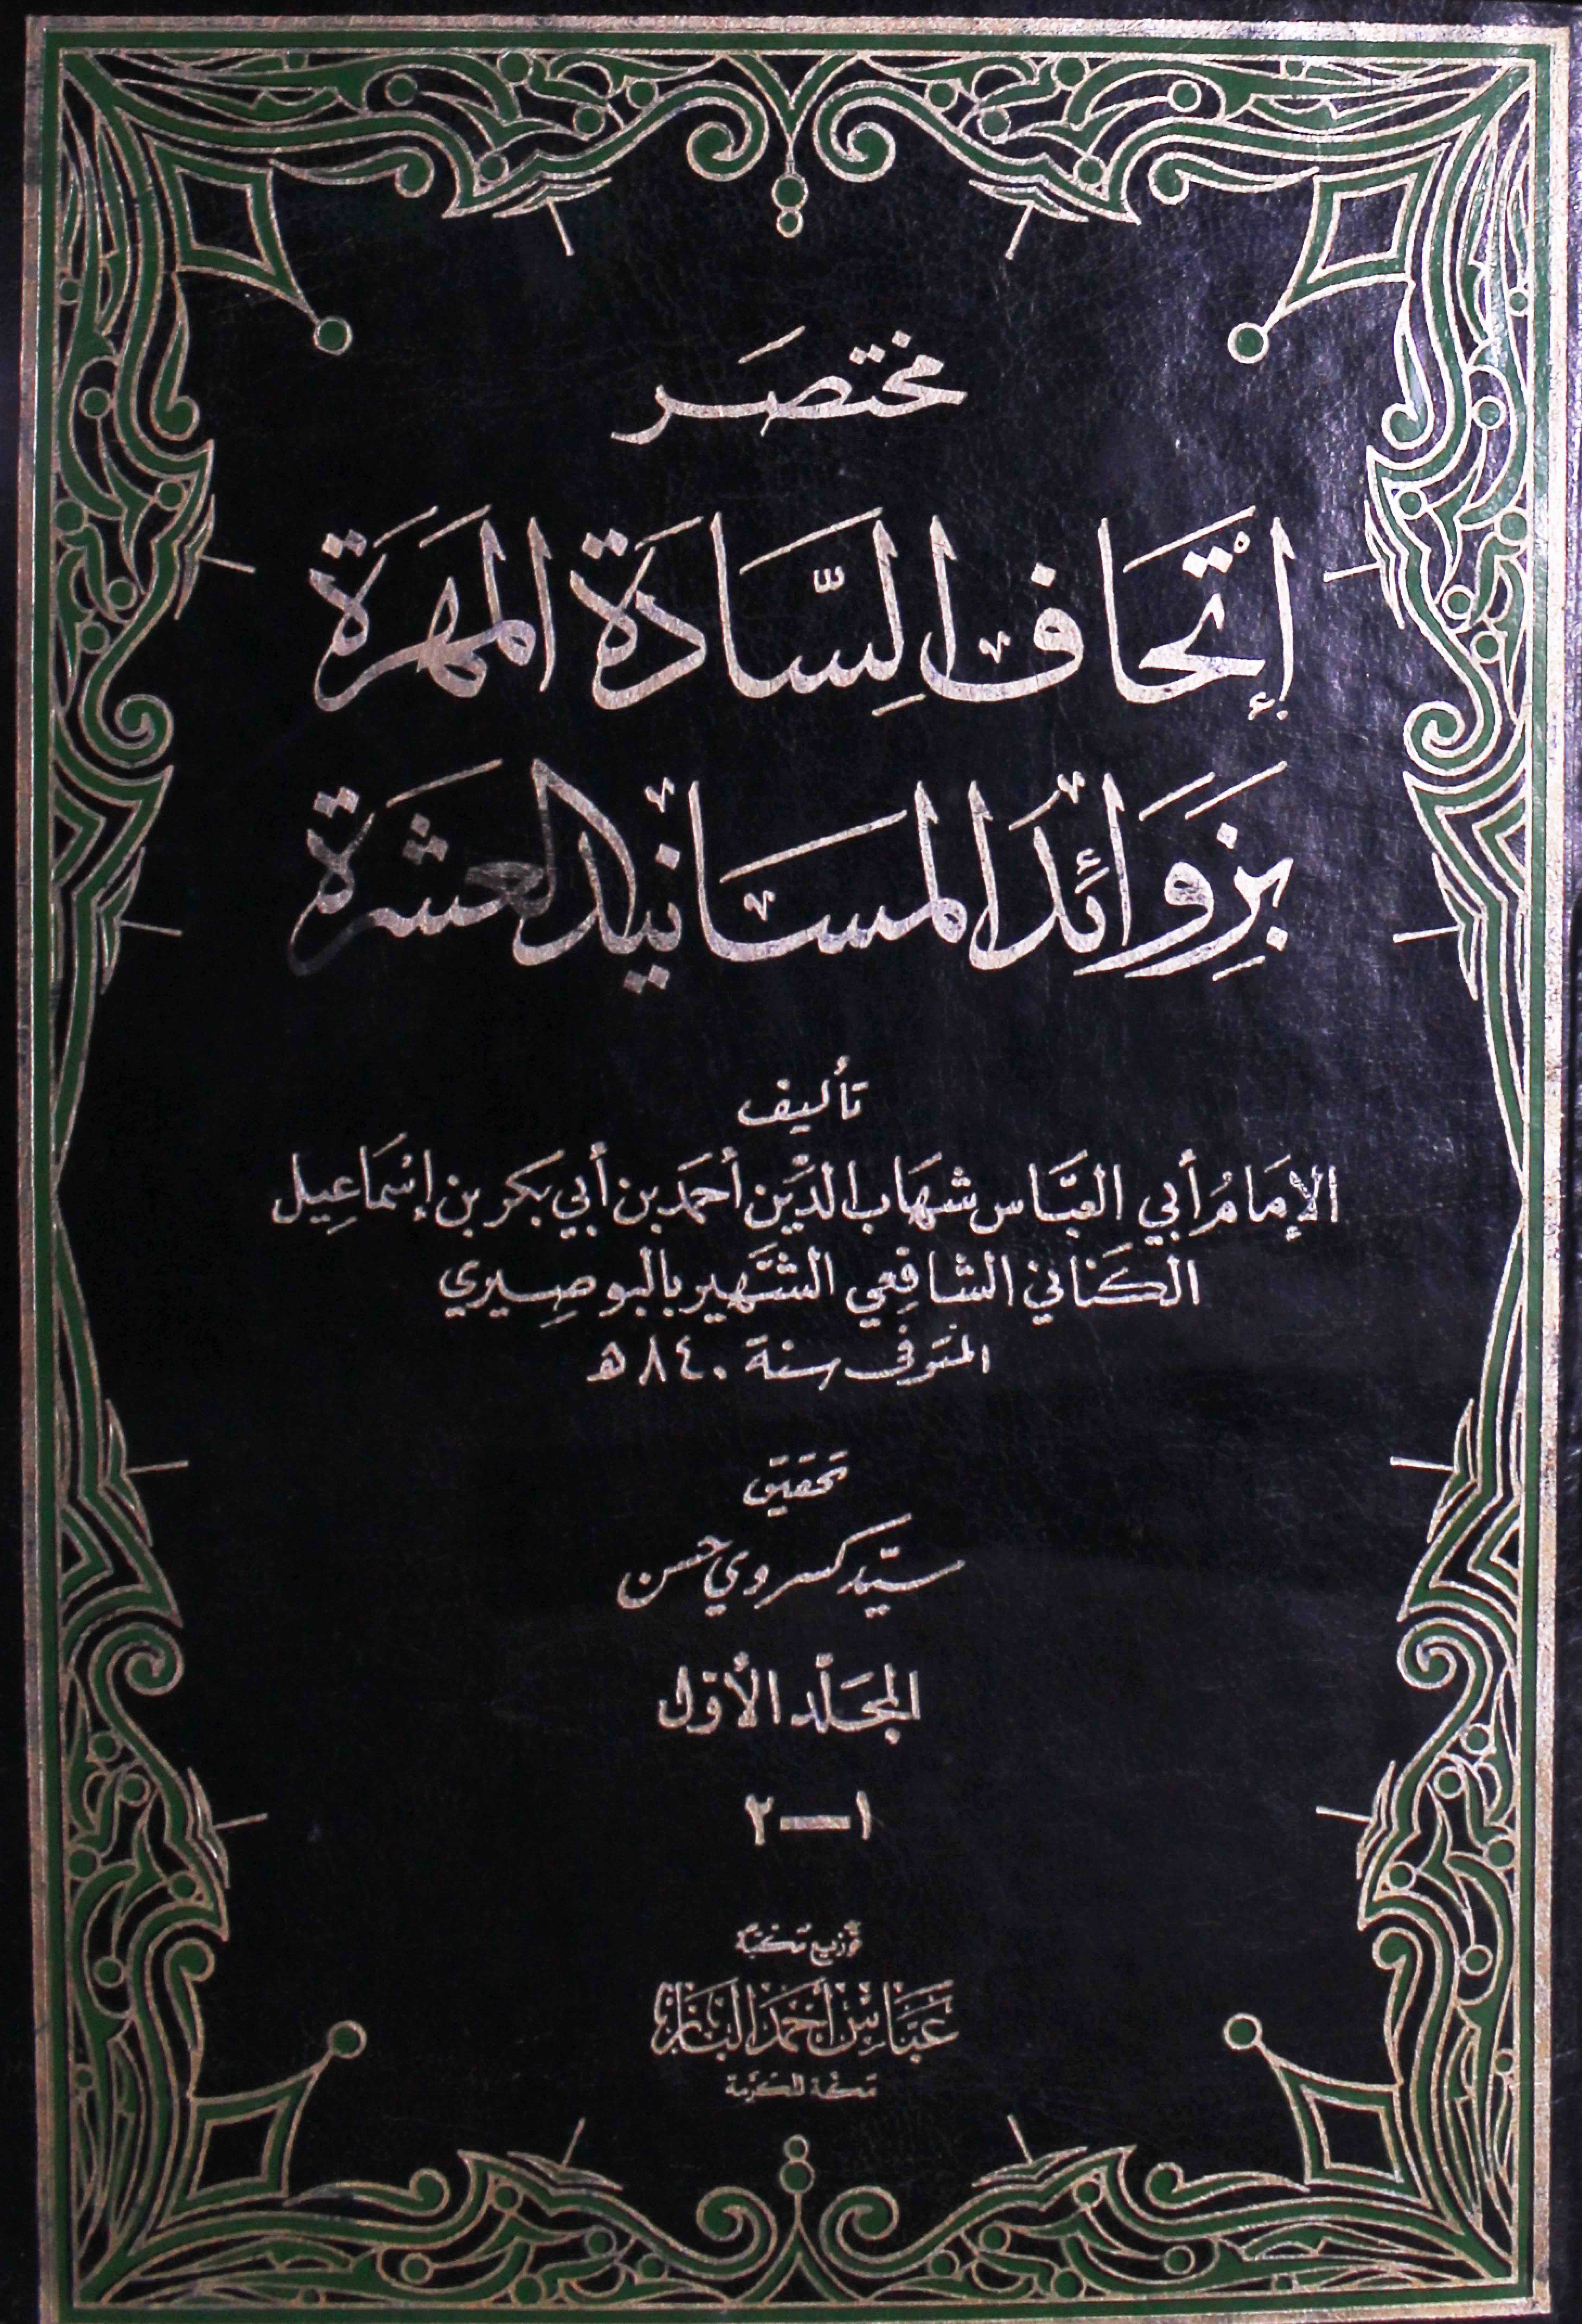 Athaf-al-sadat al mohrat